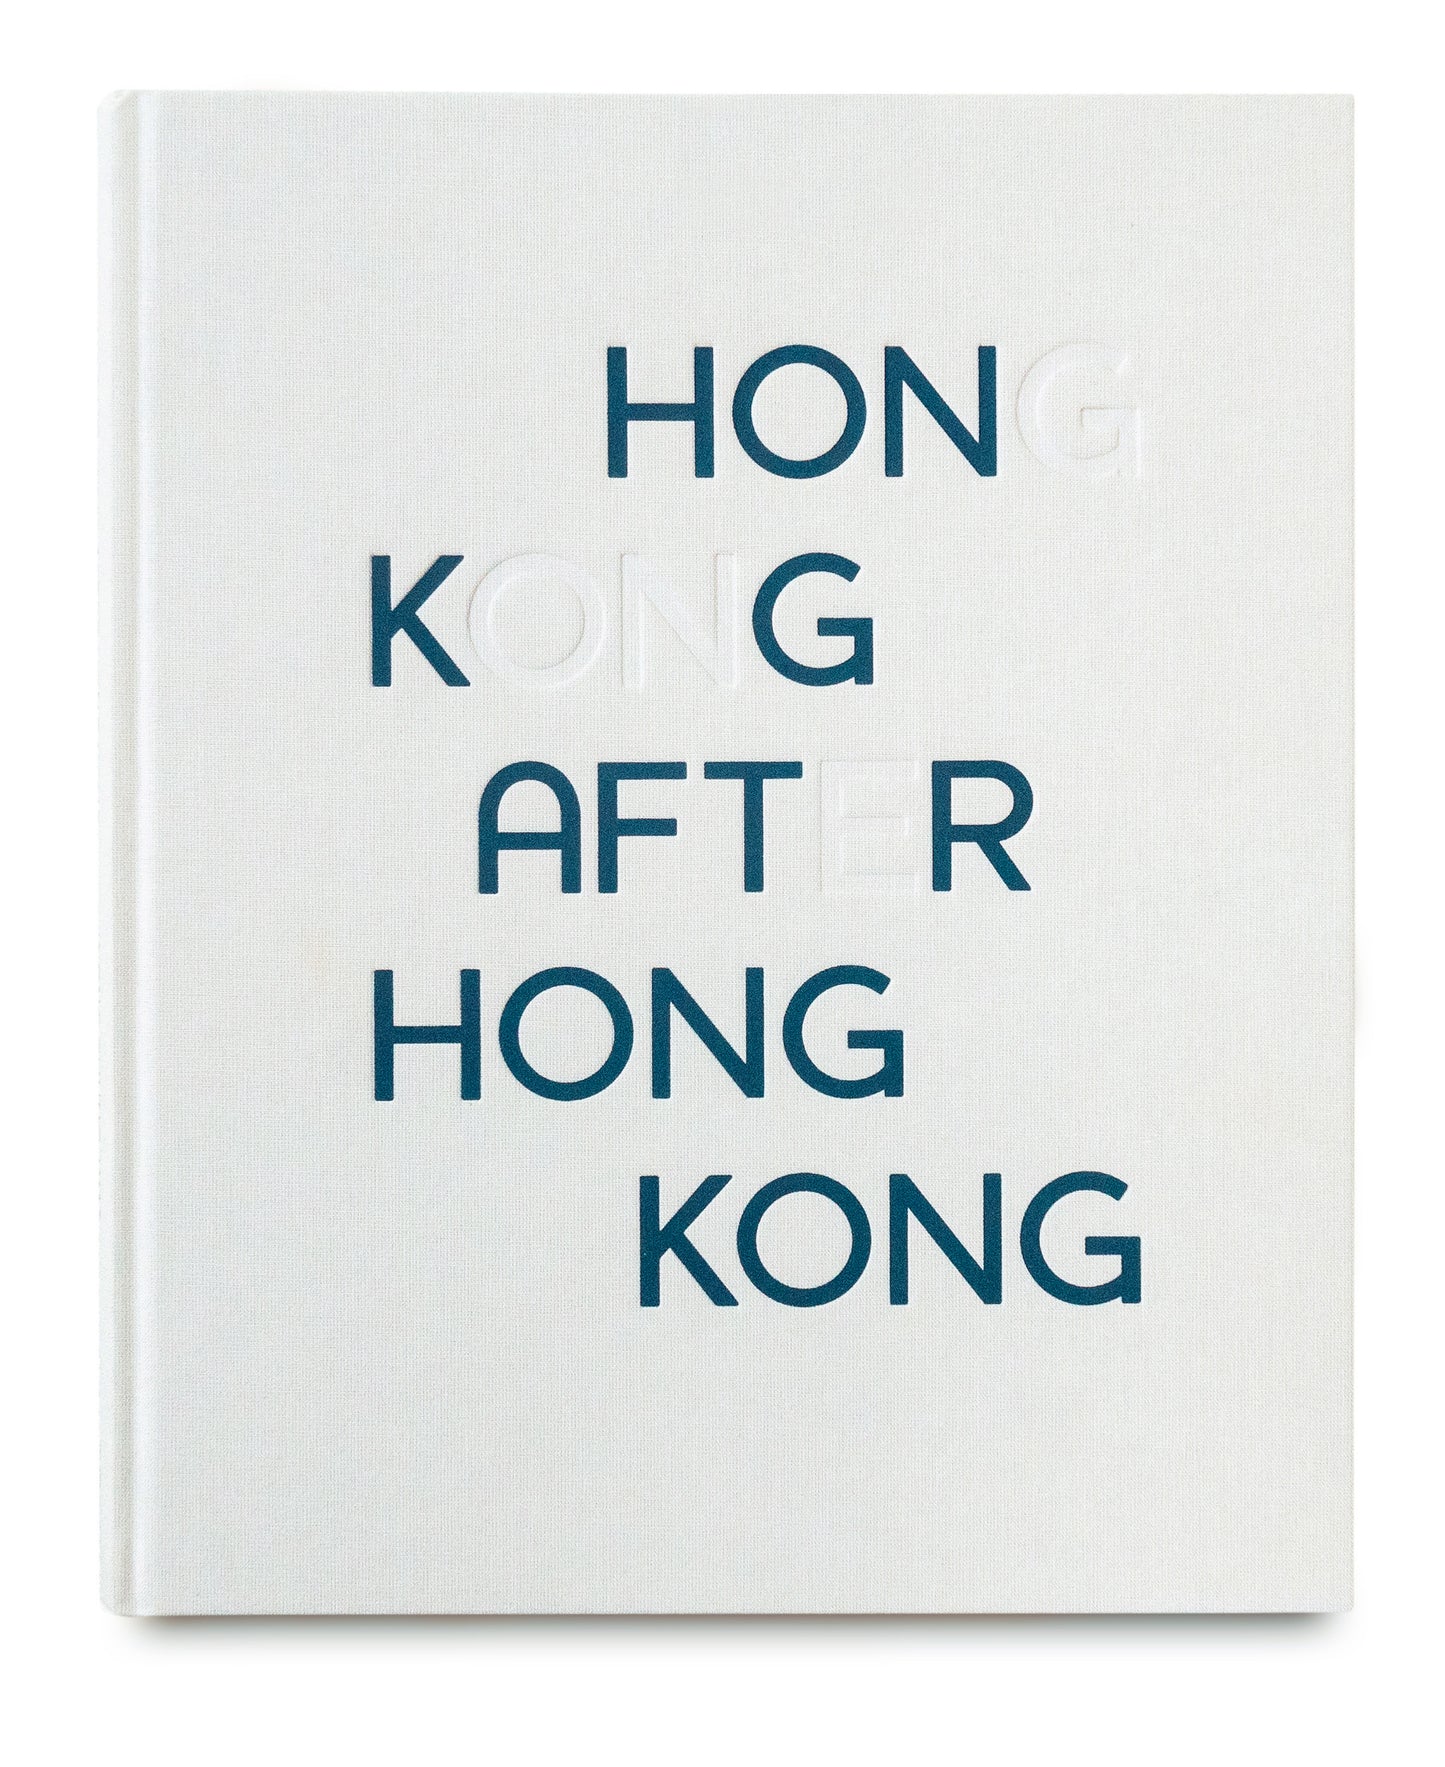 Hong Kong After Hong Kong - Signed